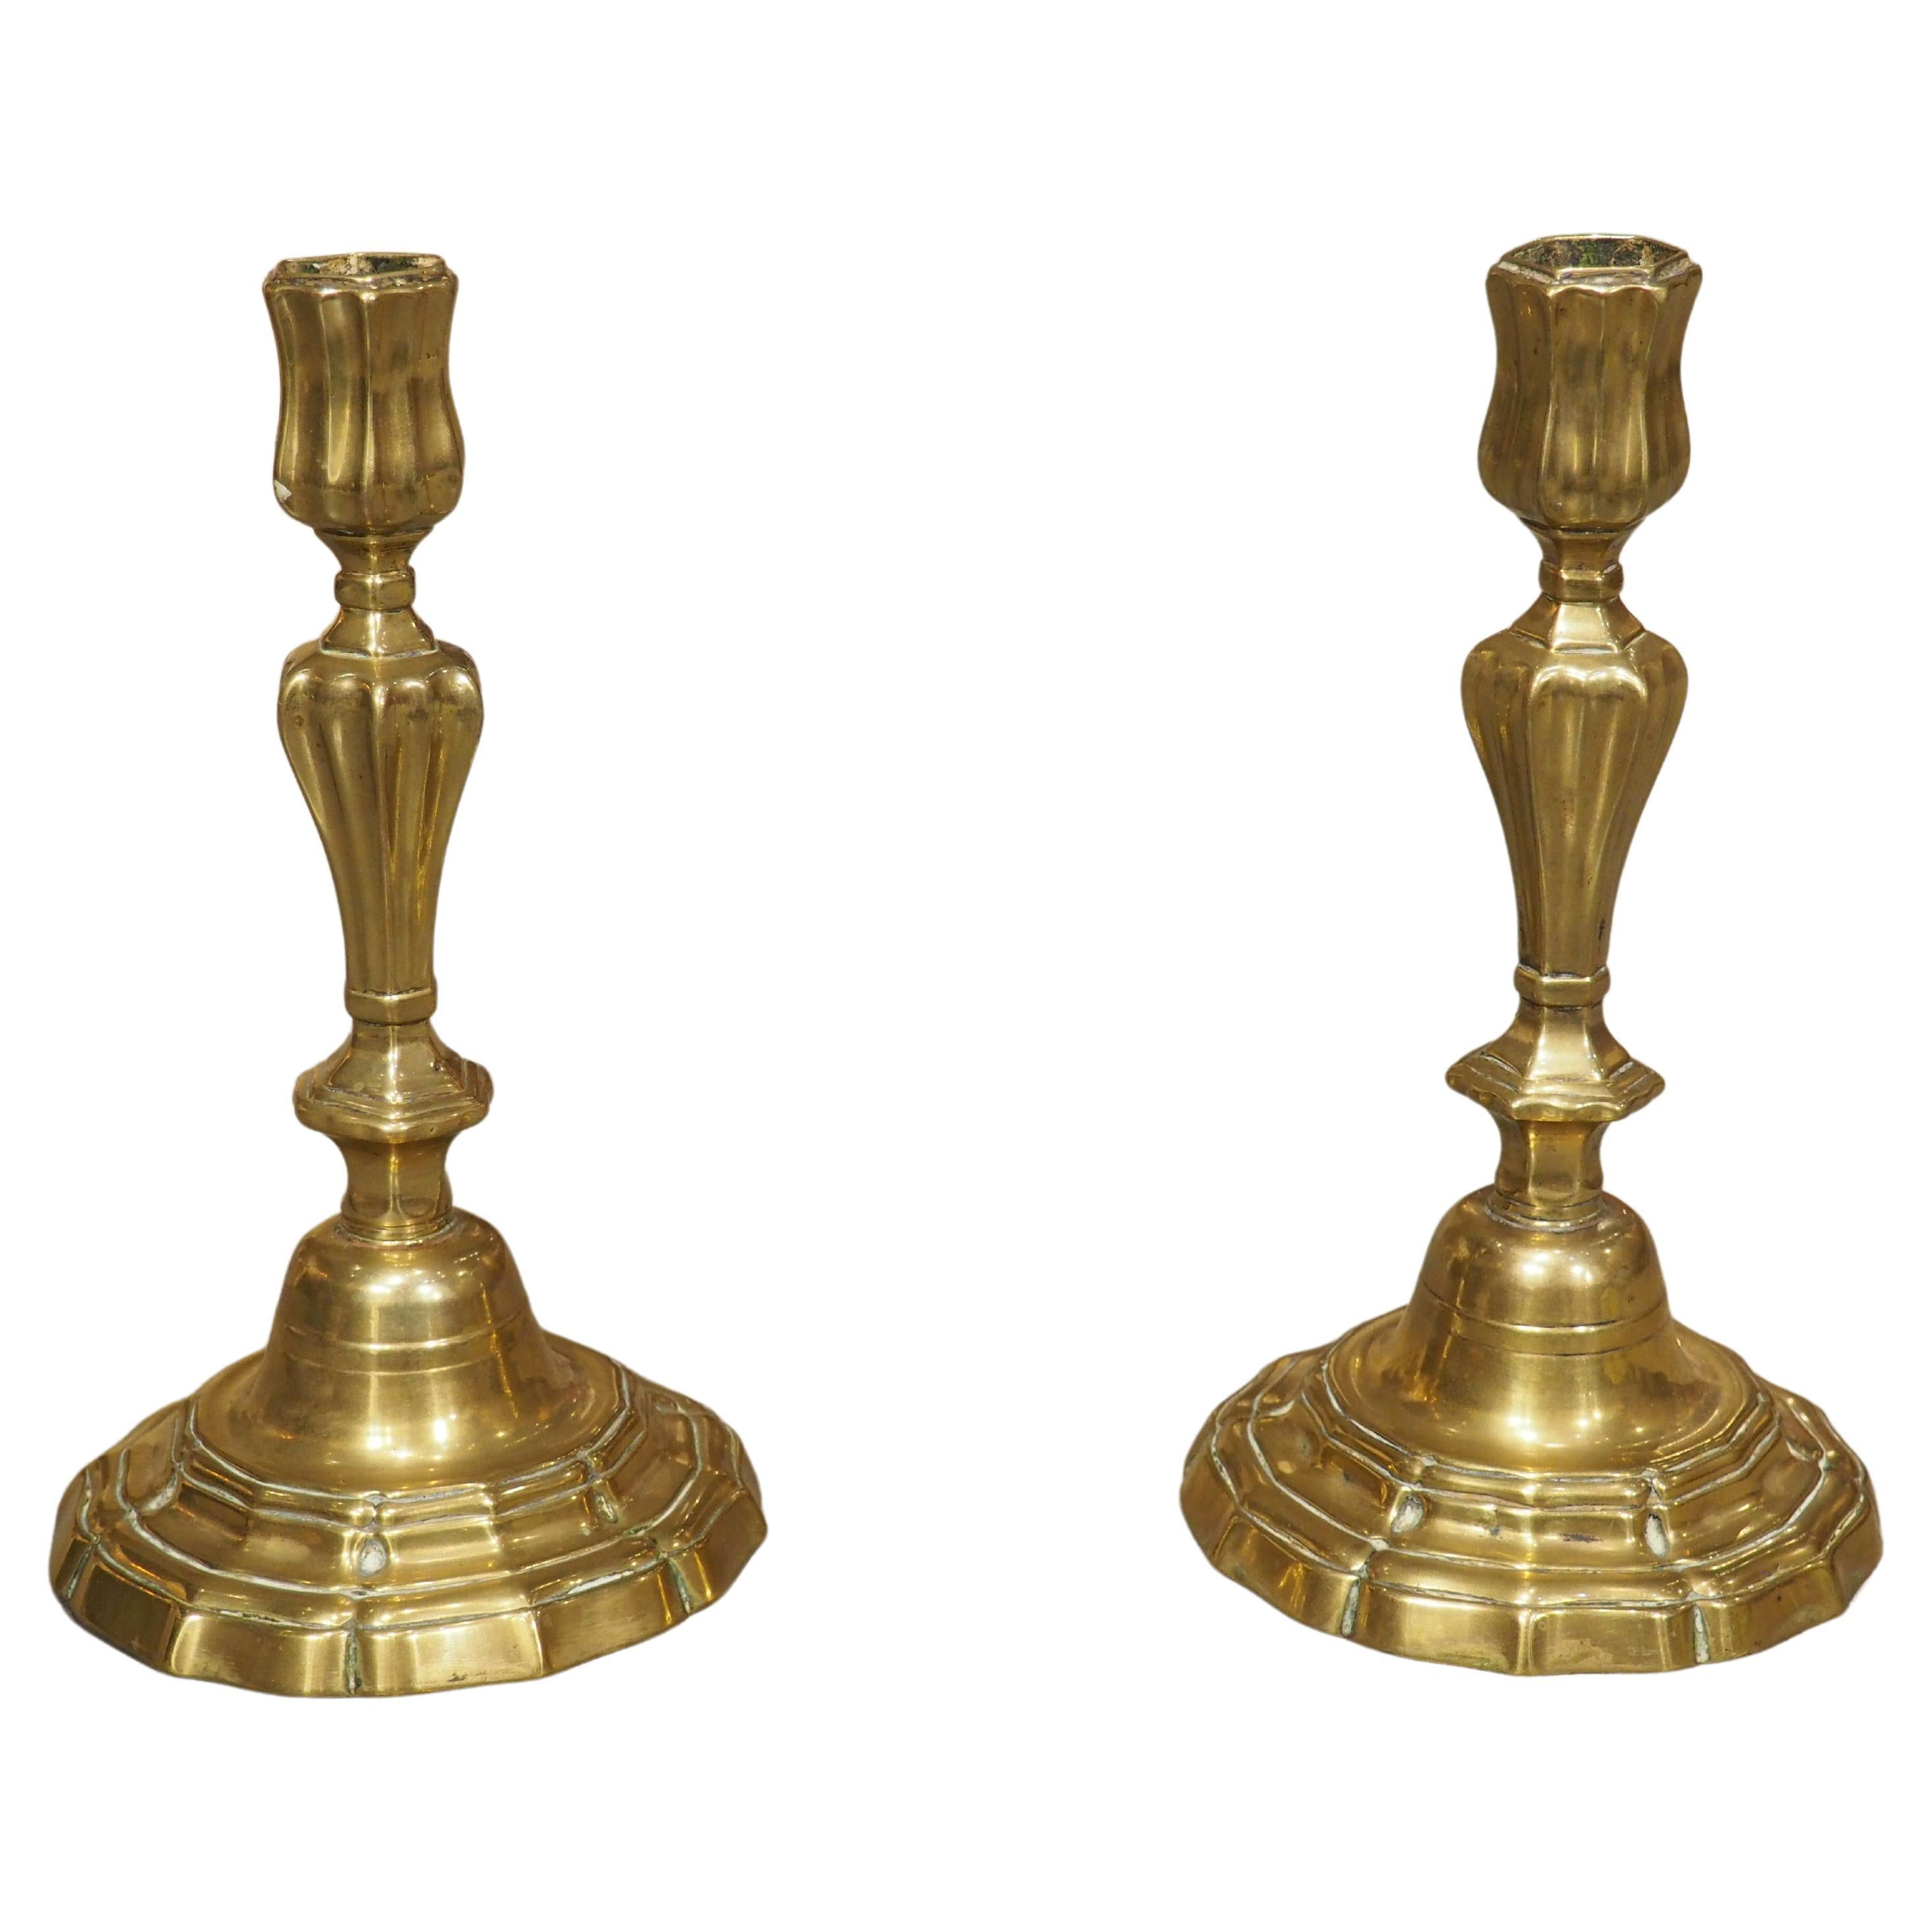 Paire de chandeliers en bronze doré français du 18e siècle